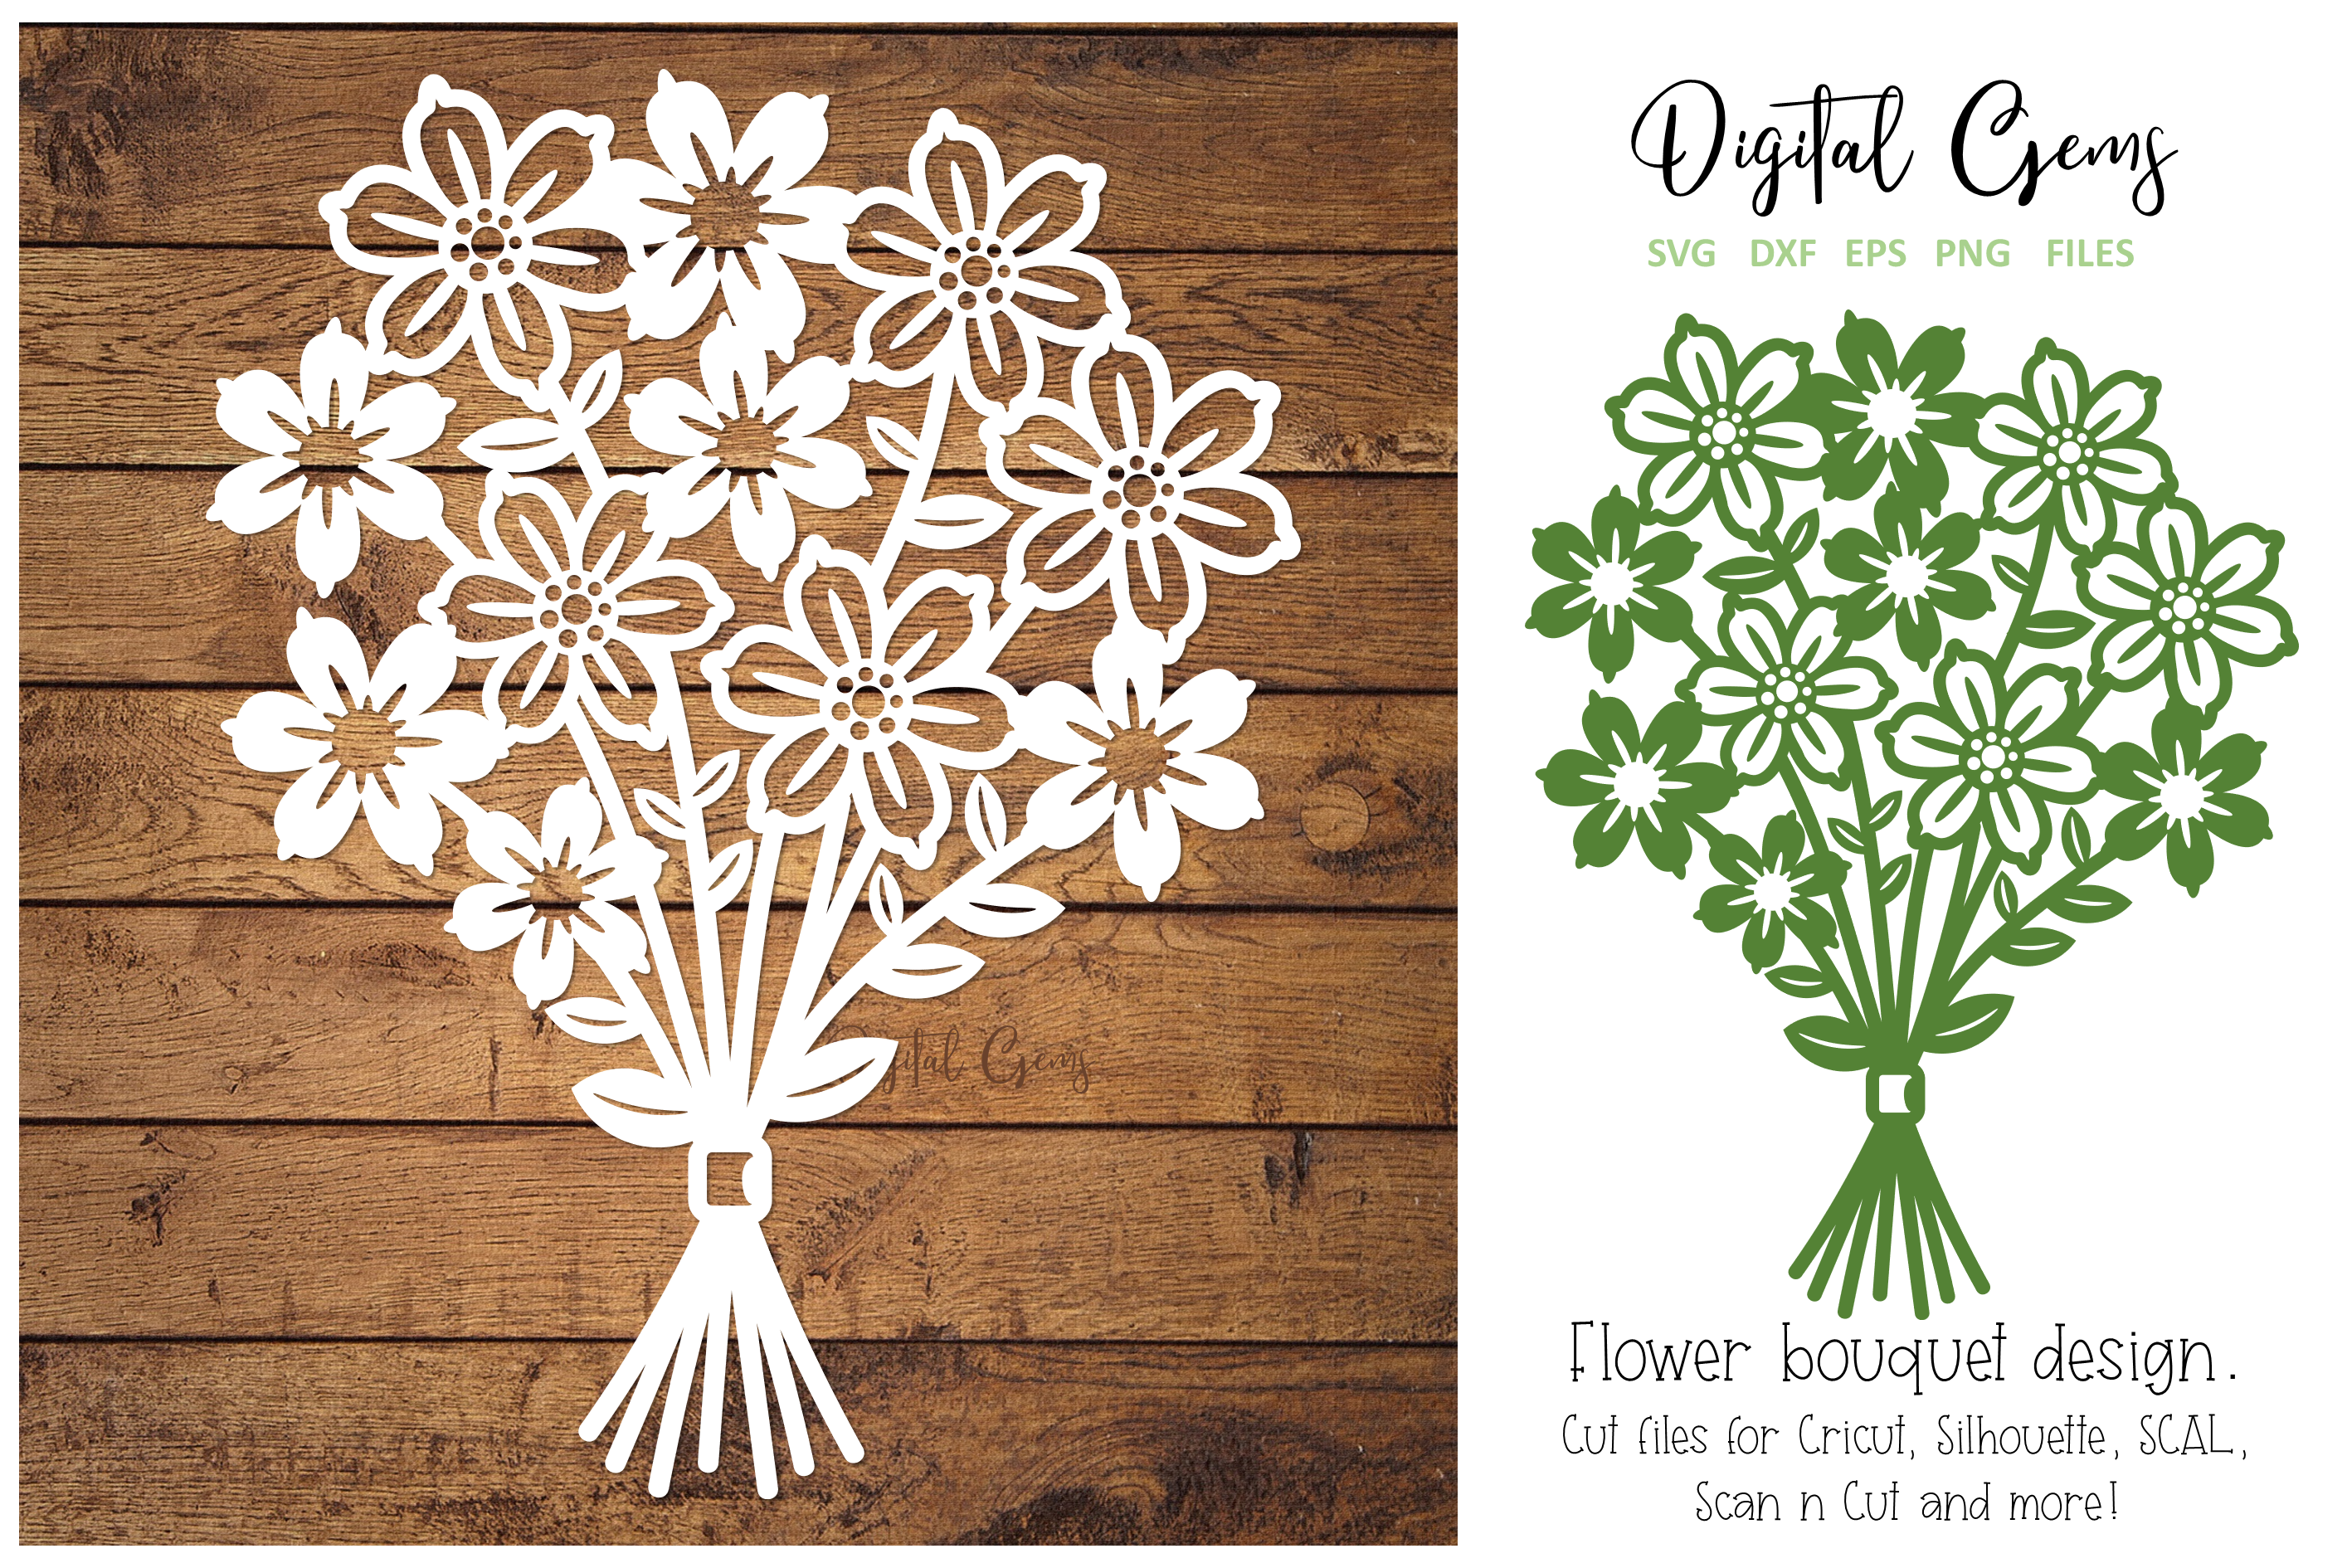 Flower bouquet paper cut design. SVG / DXF / EPS / PNG file